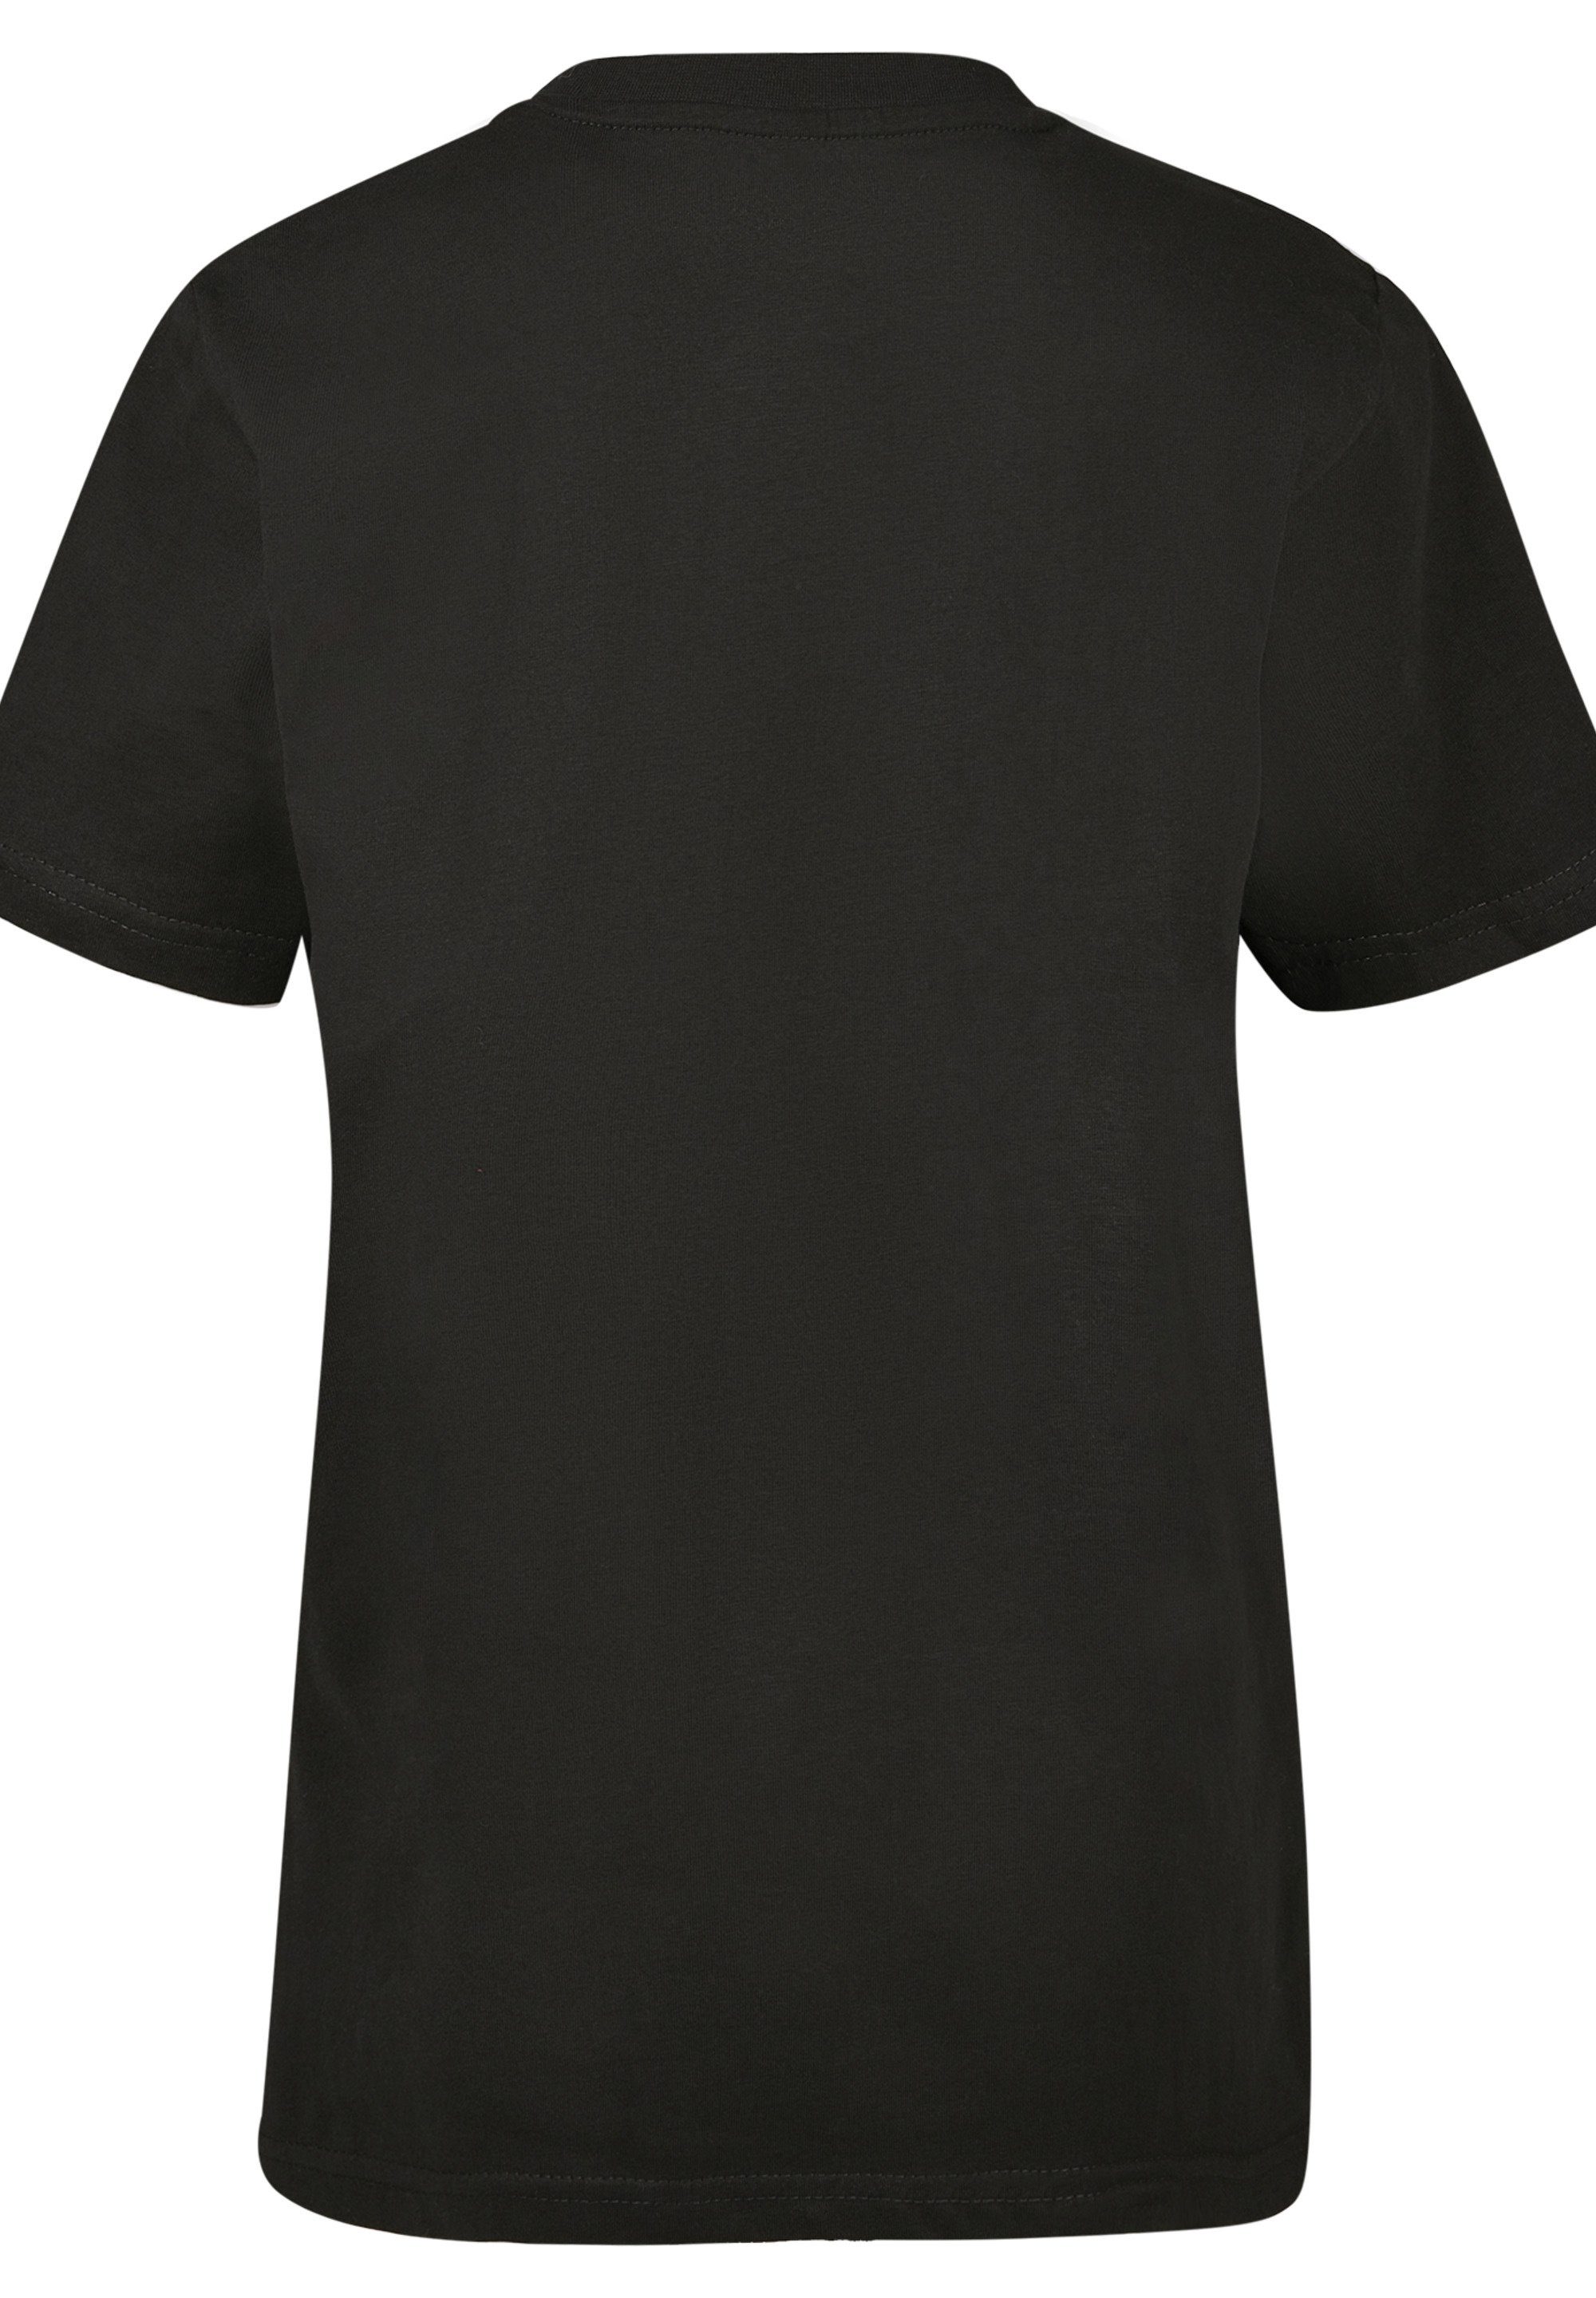 Merch,Jungen,Mädchen,Bedruckt F4NT4STIC Orbit Unisex T-Shirt Kinder,Premium Shuttle NASA